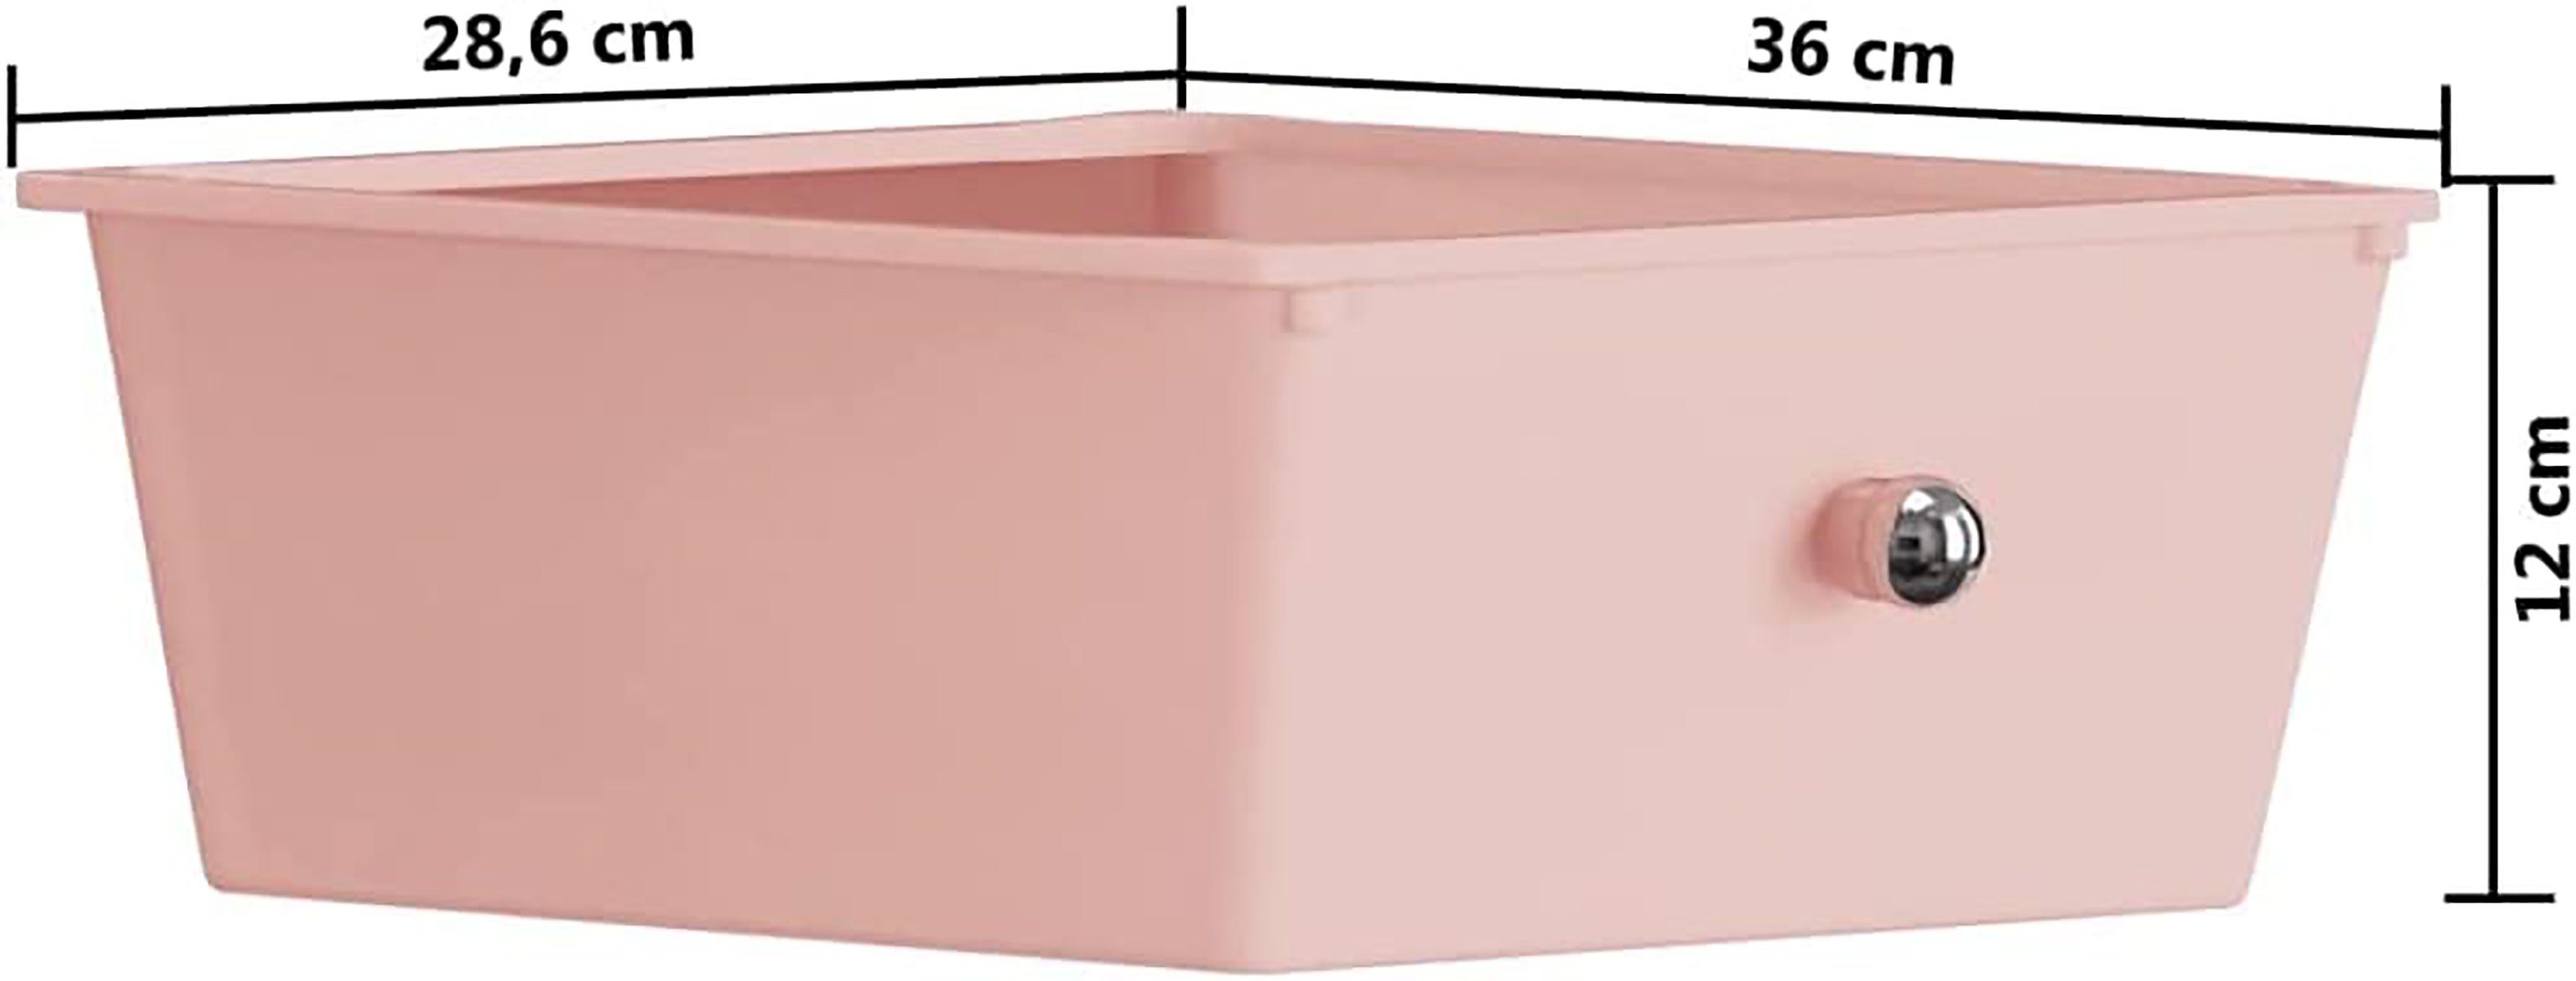 Aufbewahrungswagen aus Mobiler Servierwagen 4 Schubladen mit DOTMALL rosafarbenem